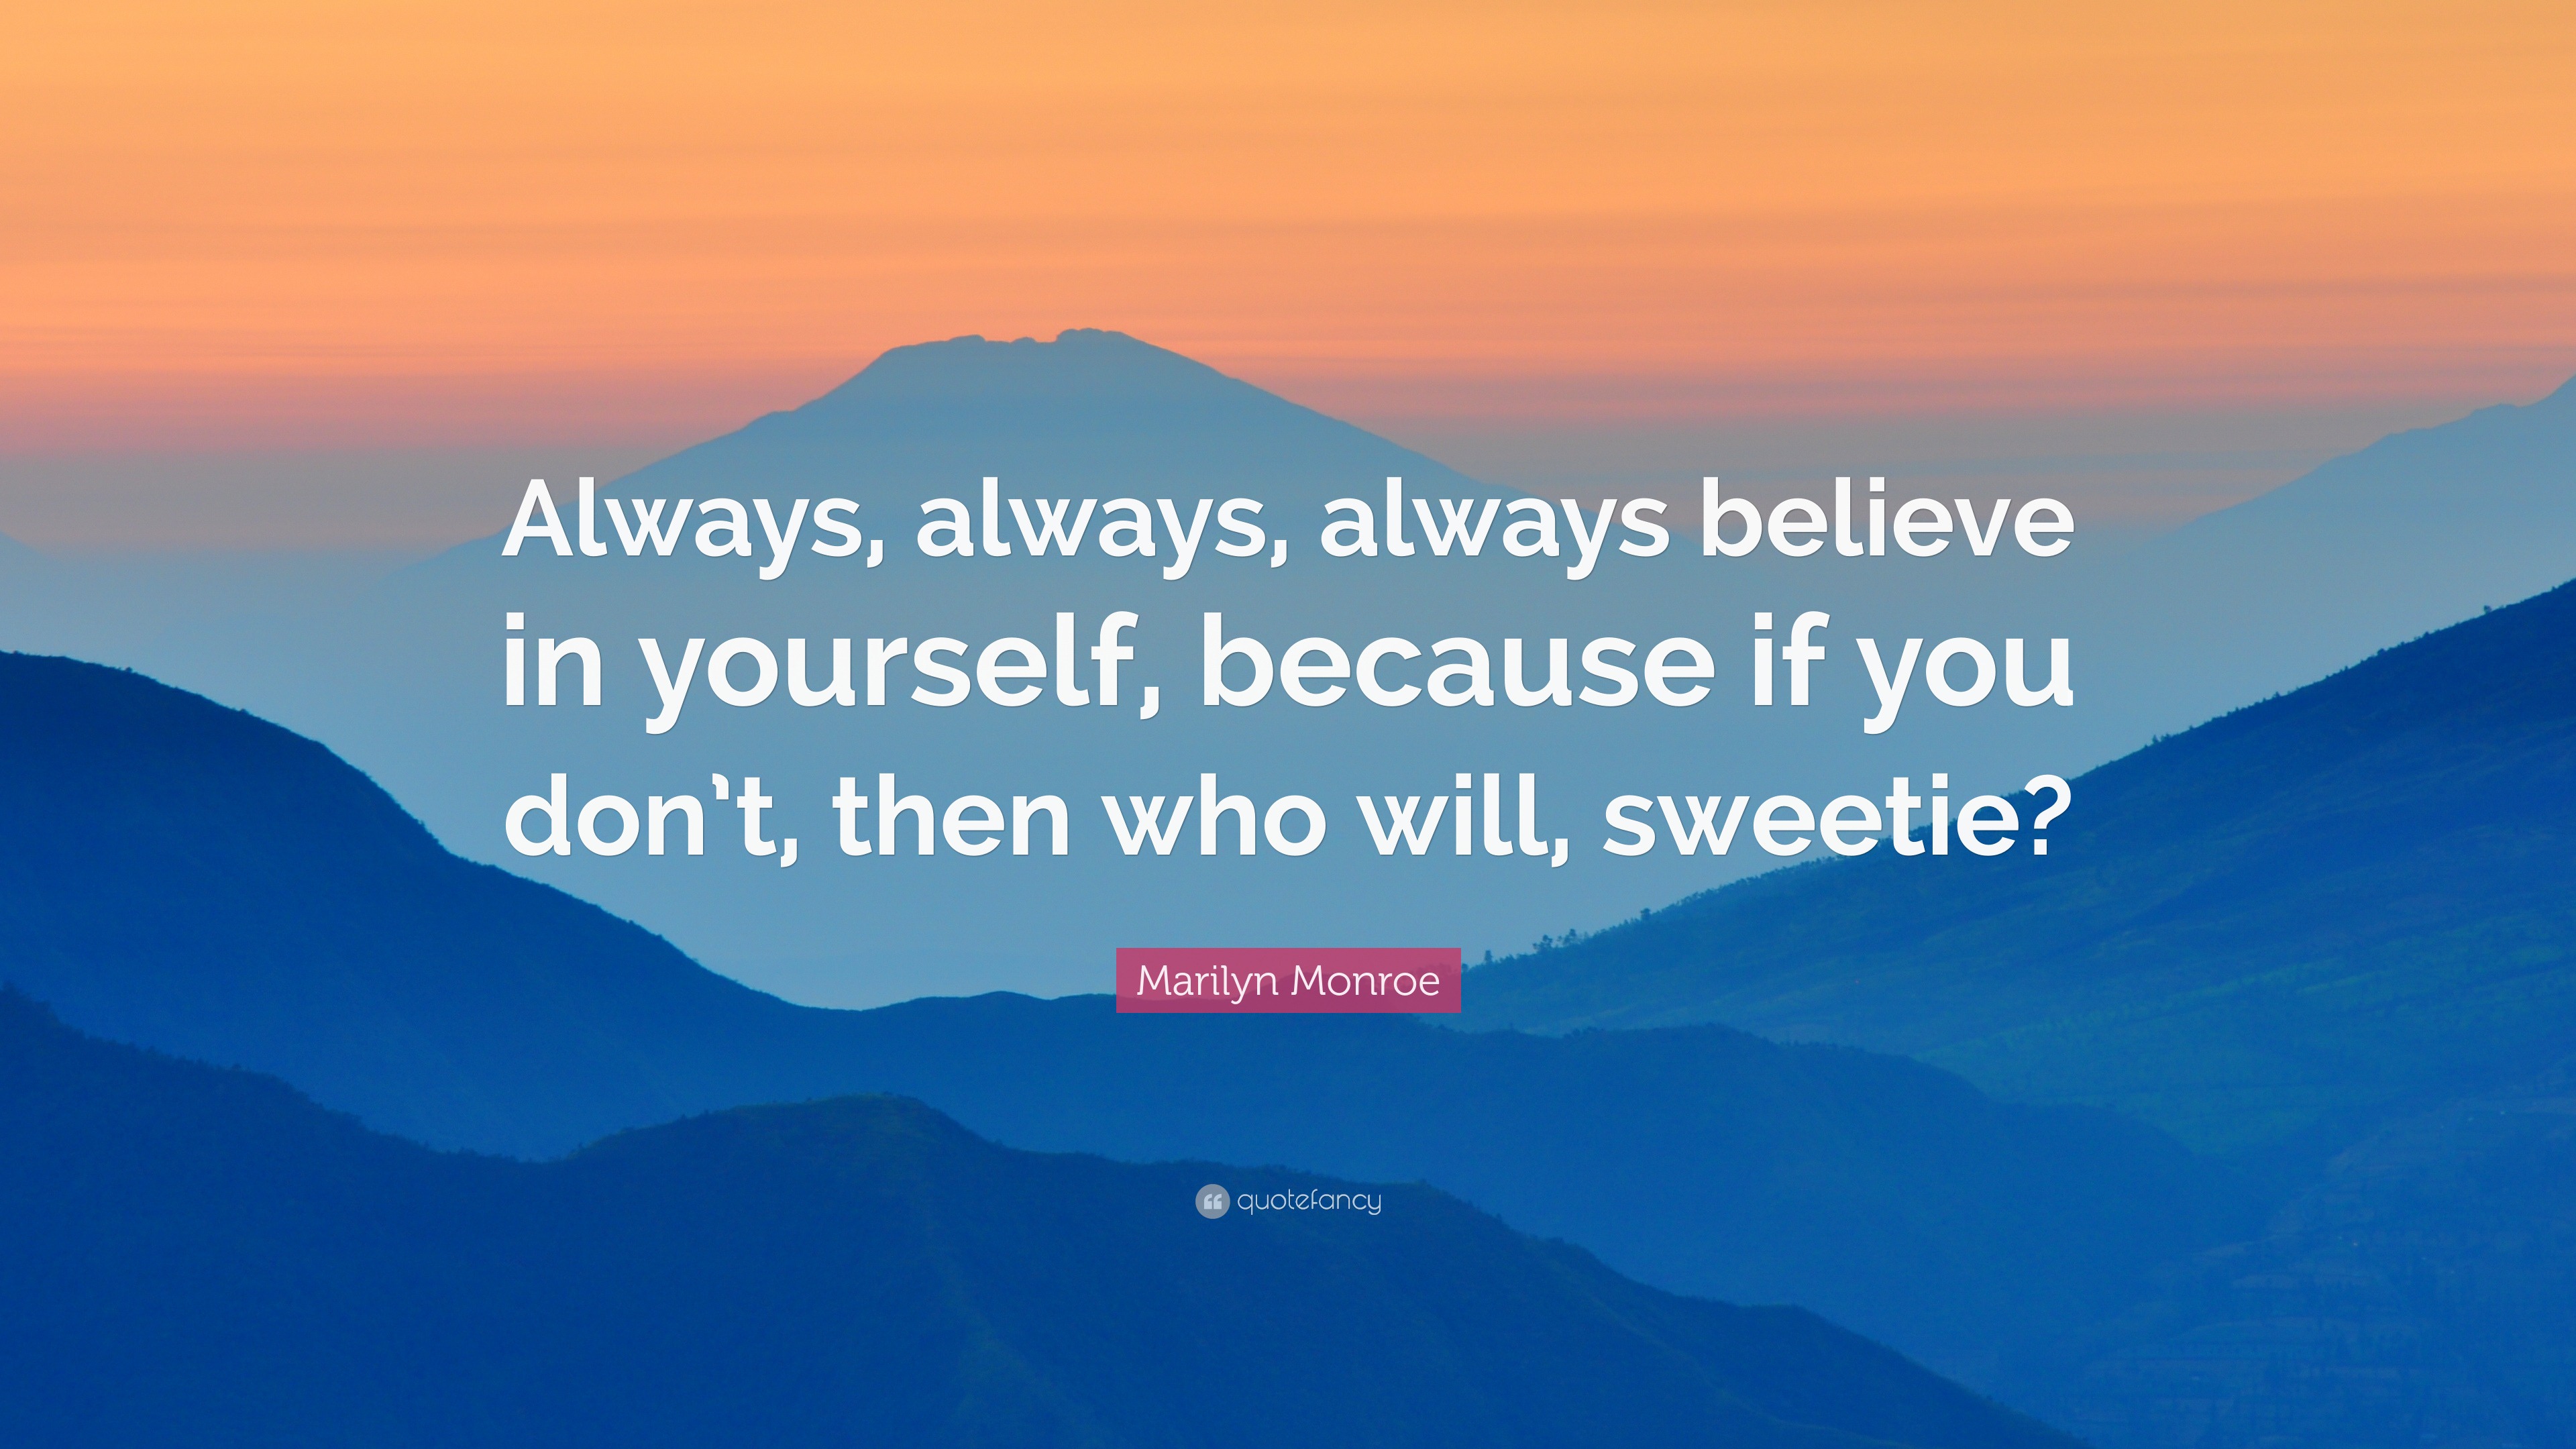 Marilyn Monroe Quote: “Always, always, always believe in yourself ...